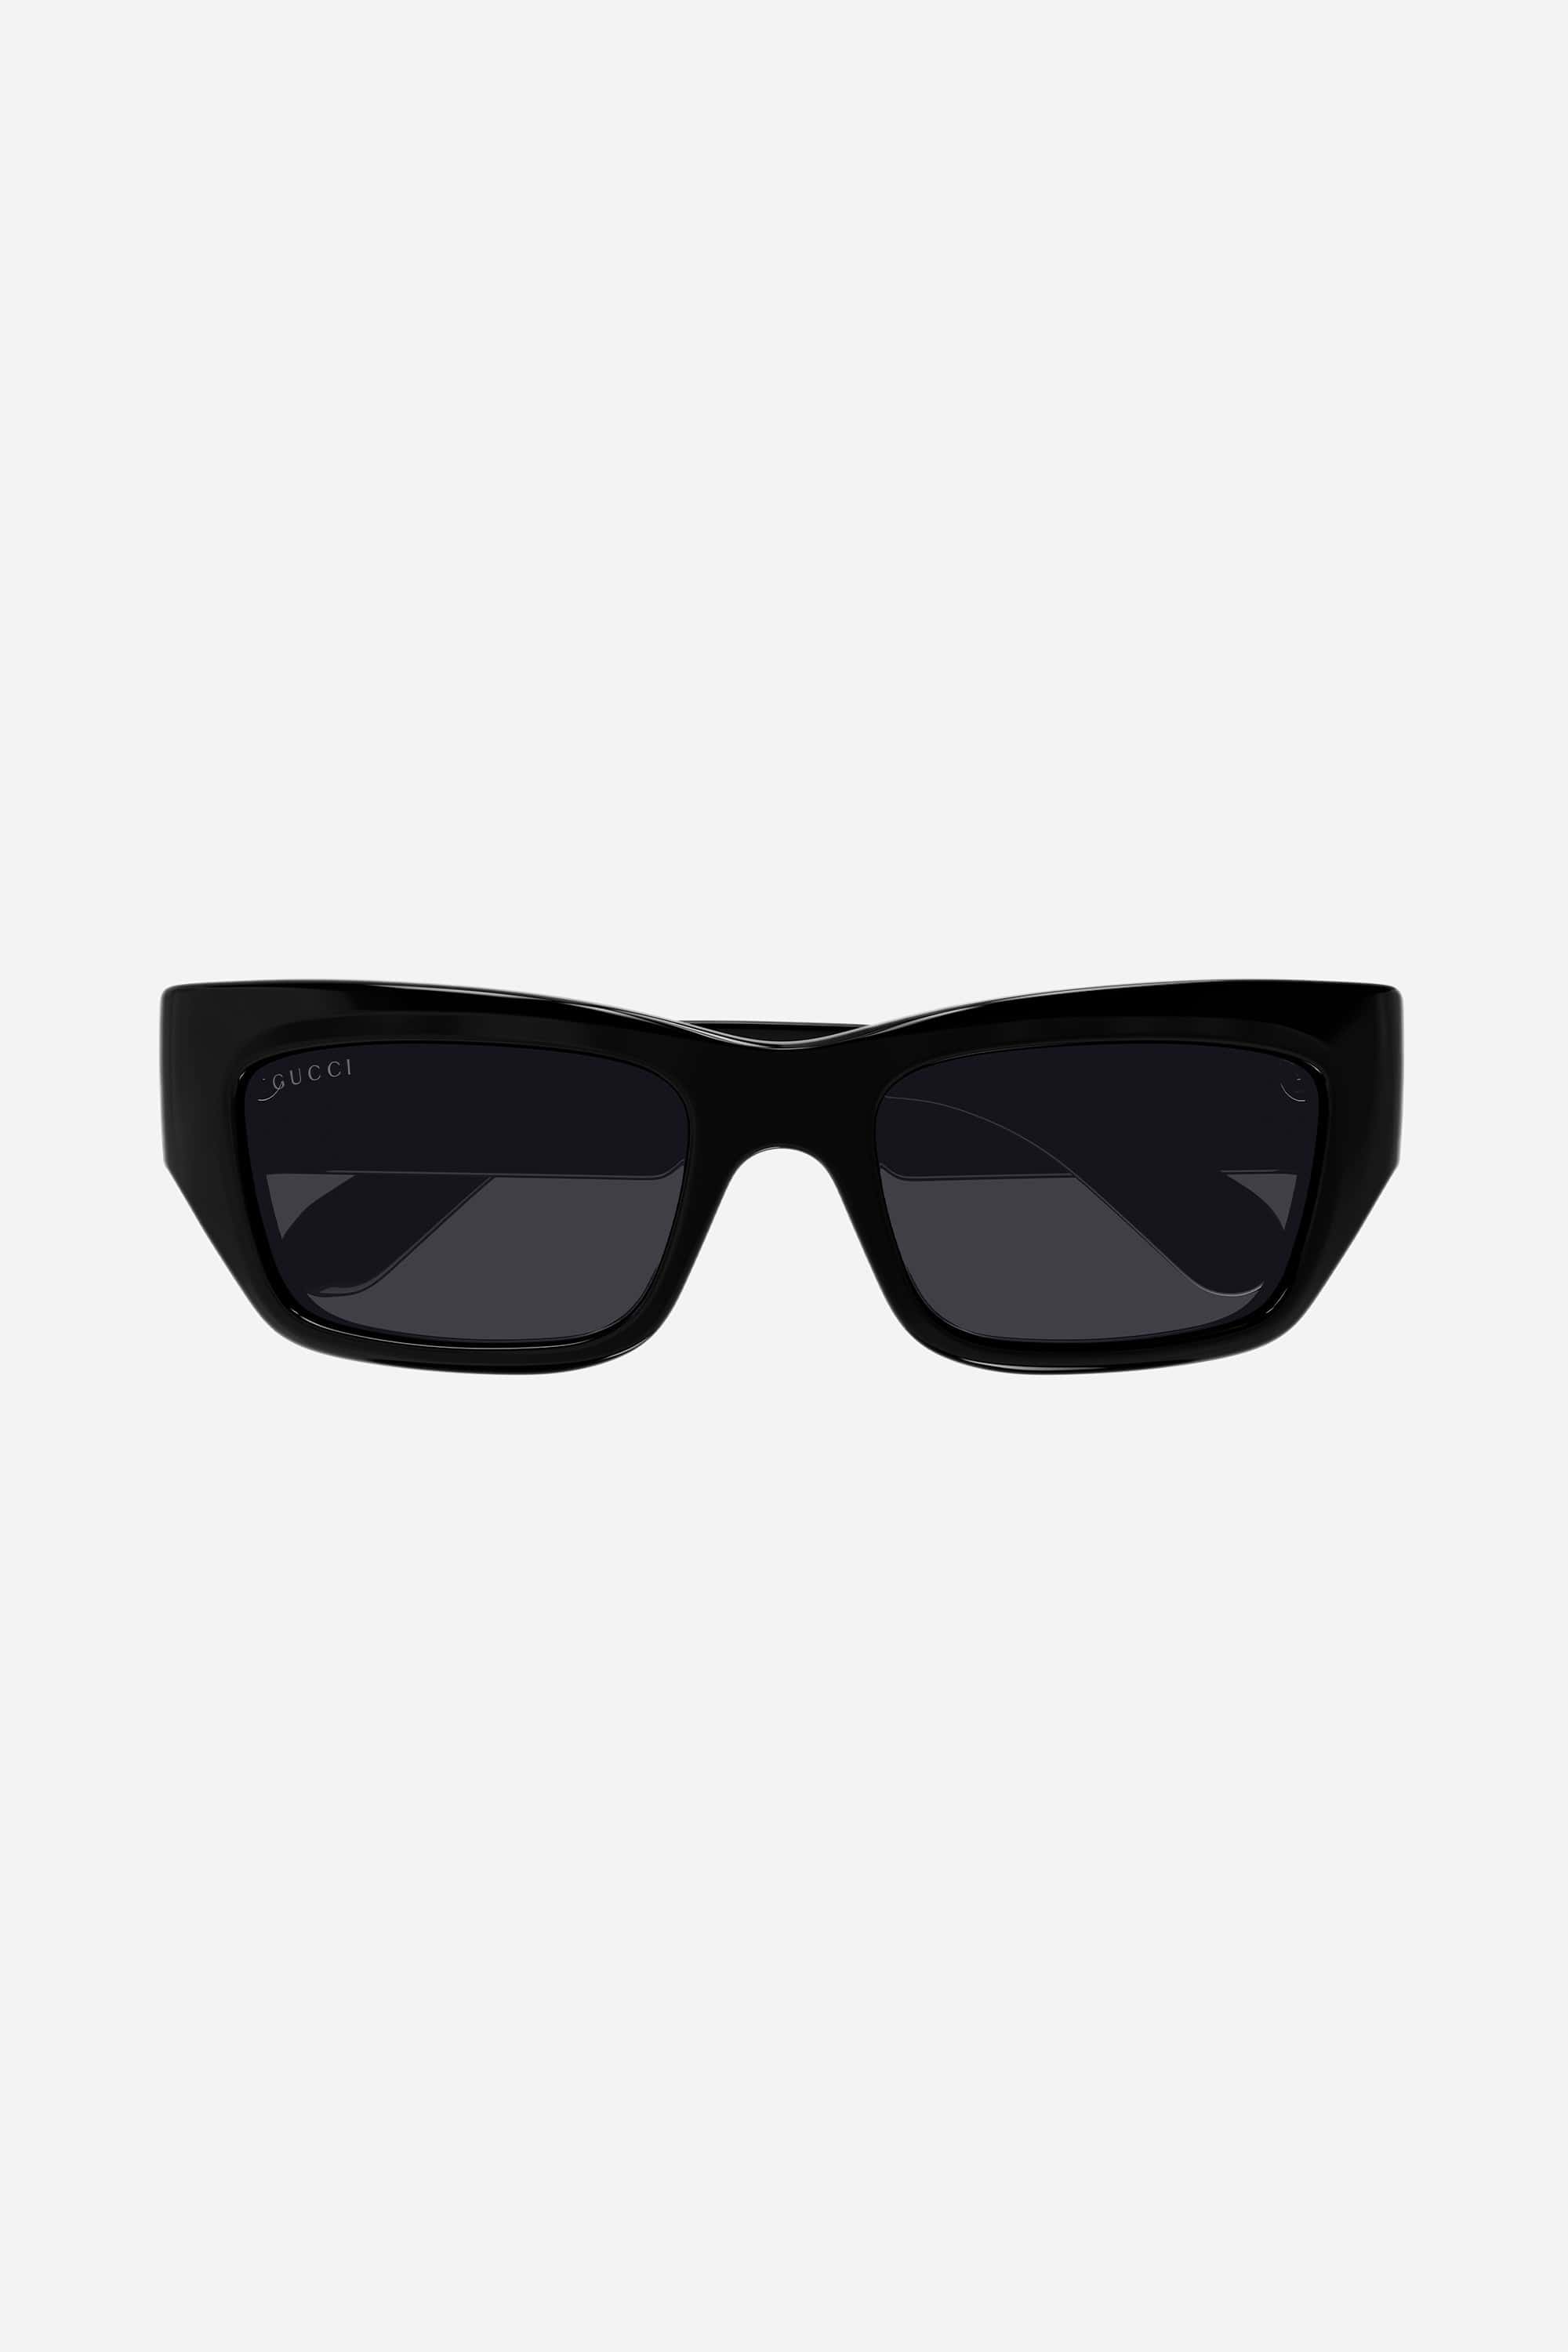 Gucci black runway wrap sunglasses - Eyewear Club